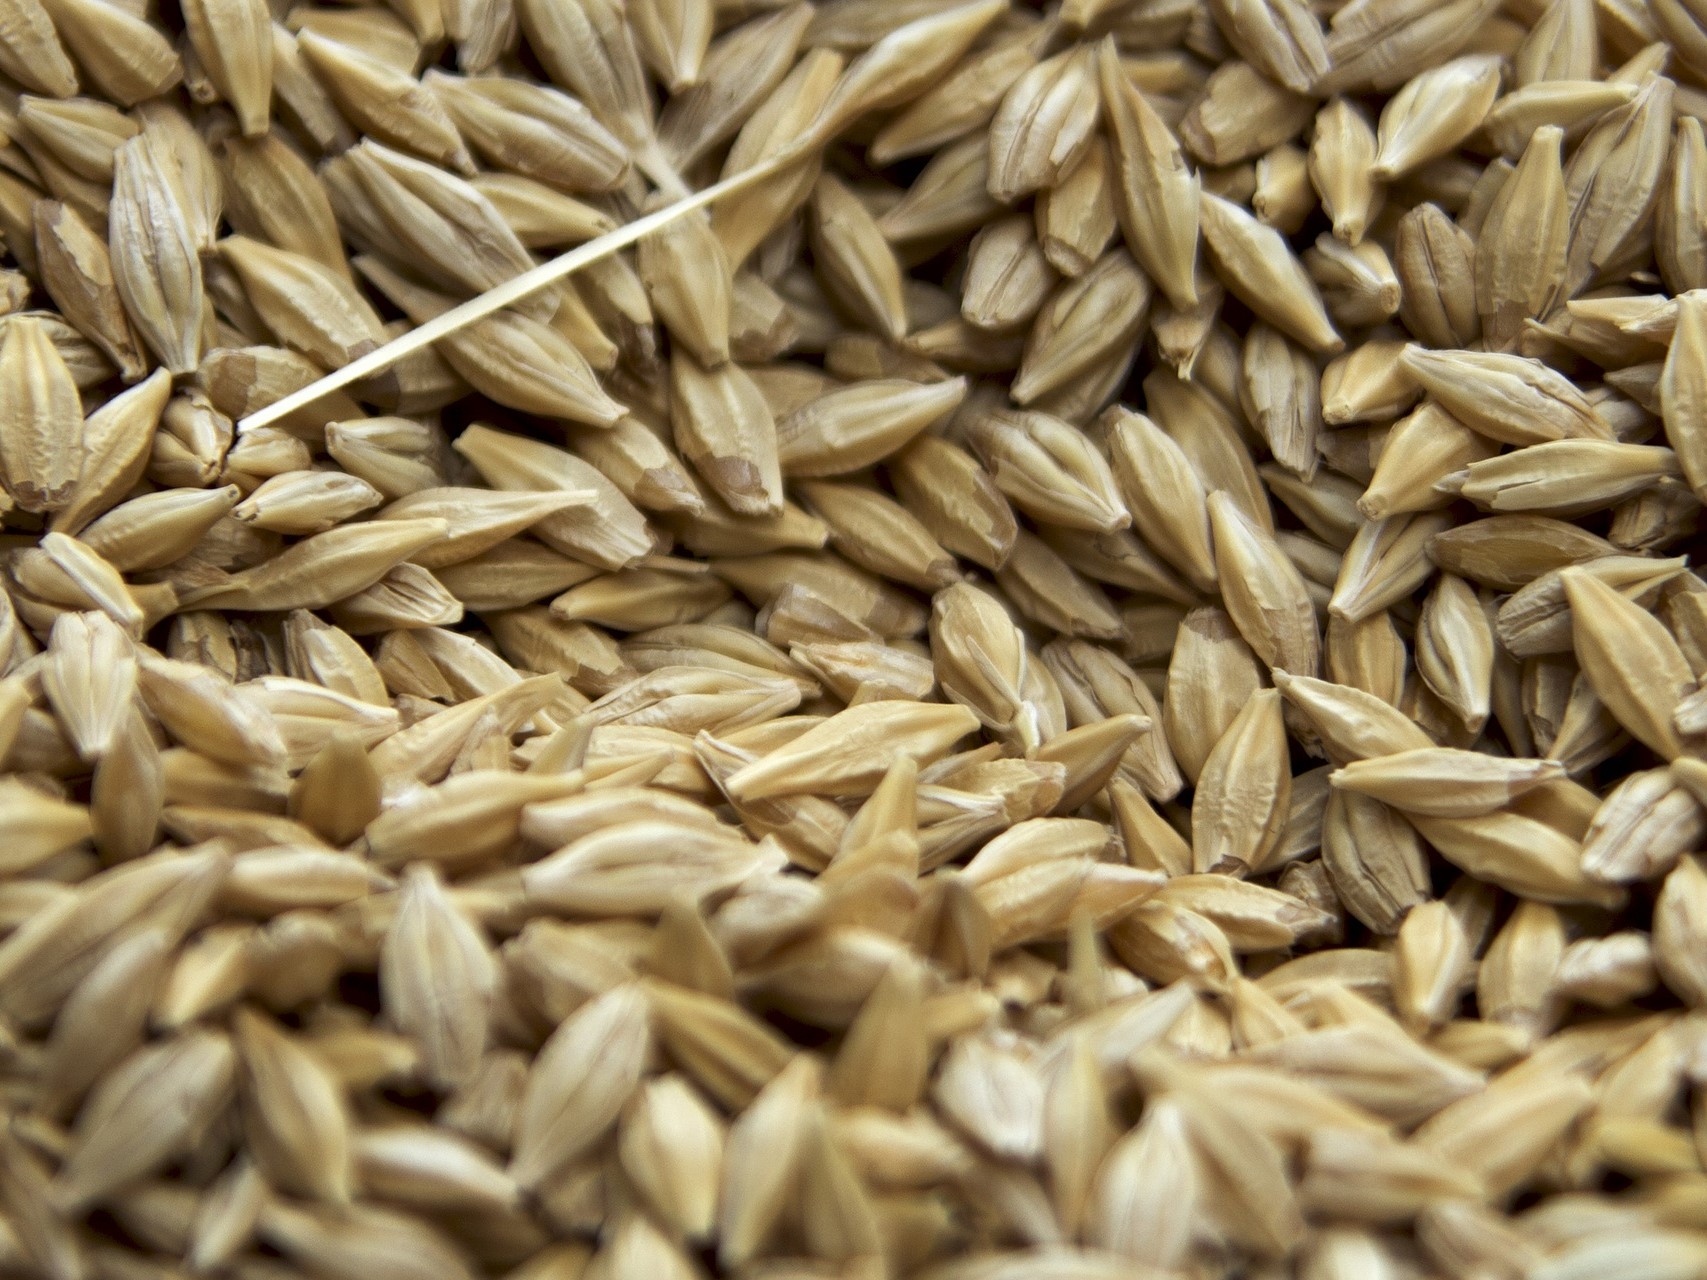 Большая часть собранной пшеницы в этом году относится к 4-му классу